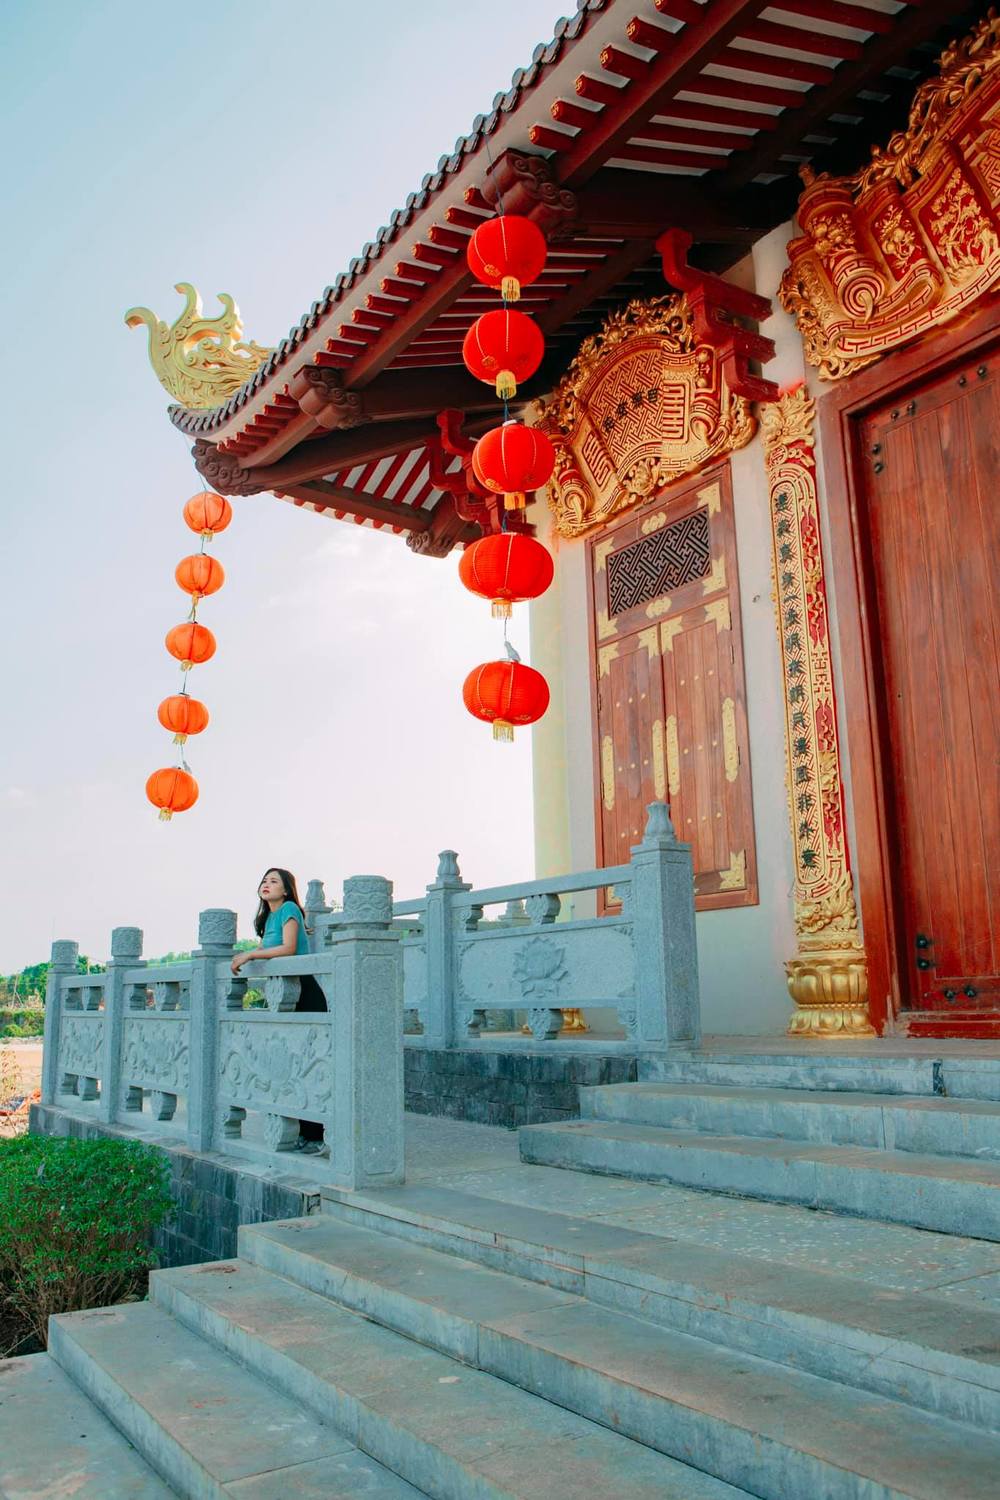  
Cổng mái chùa được thiết kế theo phong cách Nhật Bản. (Ảnh: Tiên Tí Tởn/Việt Nam Ơi)